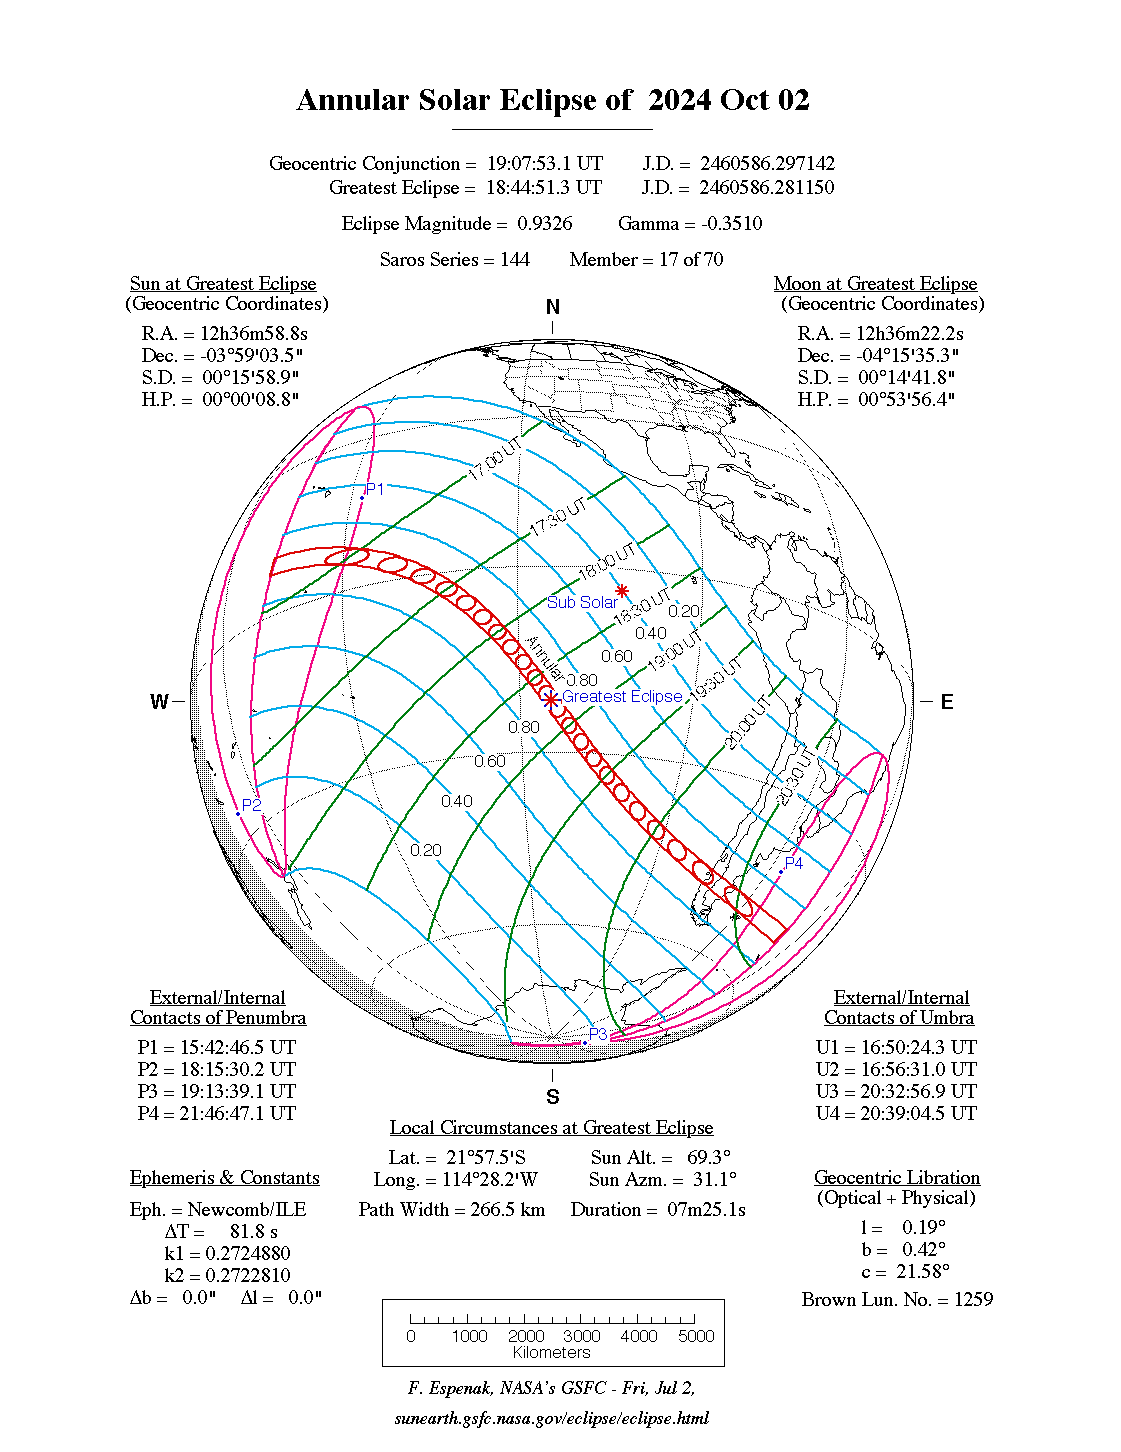 Verlauf der Ringförmigen Sonnenfinsternis am 02.10.2024